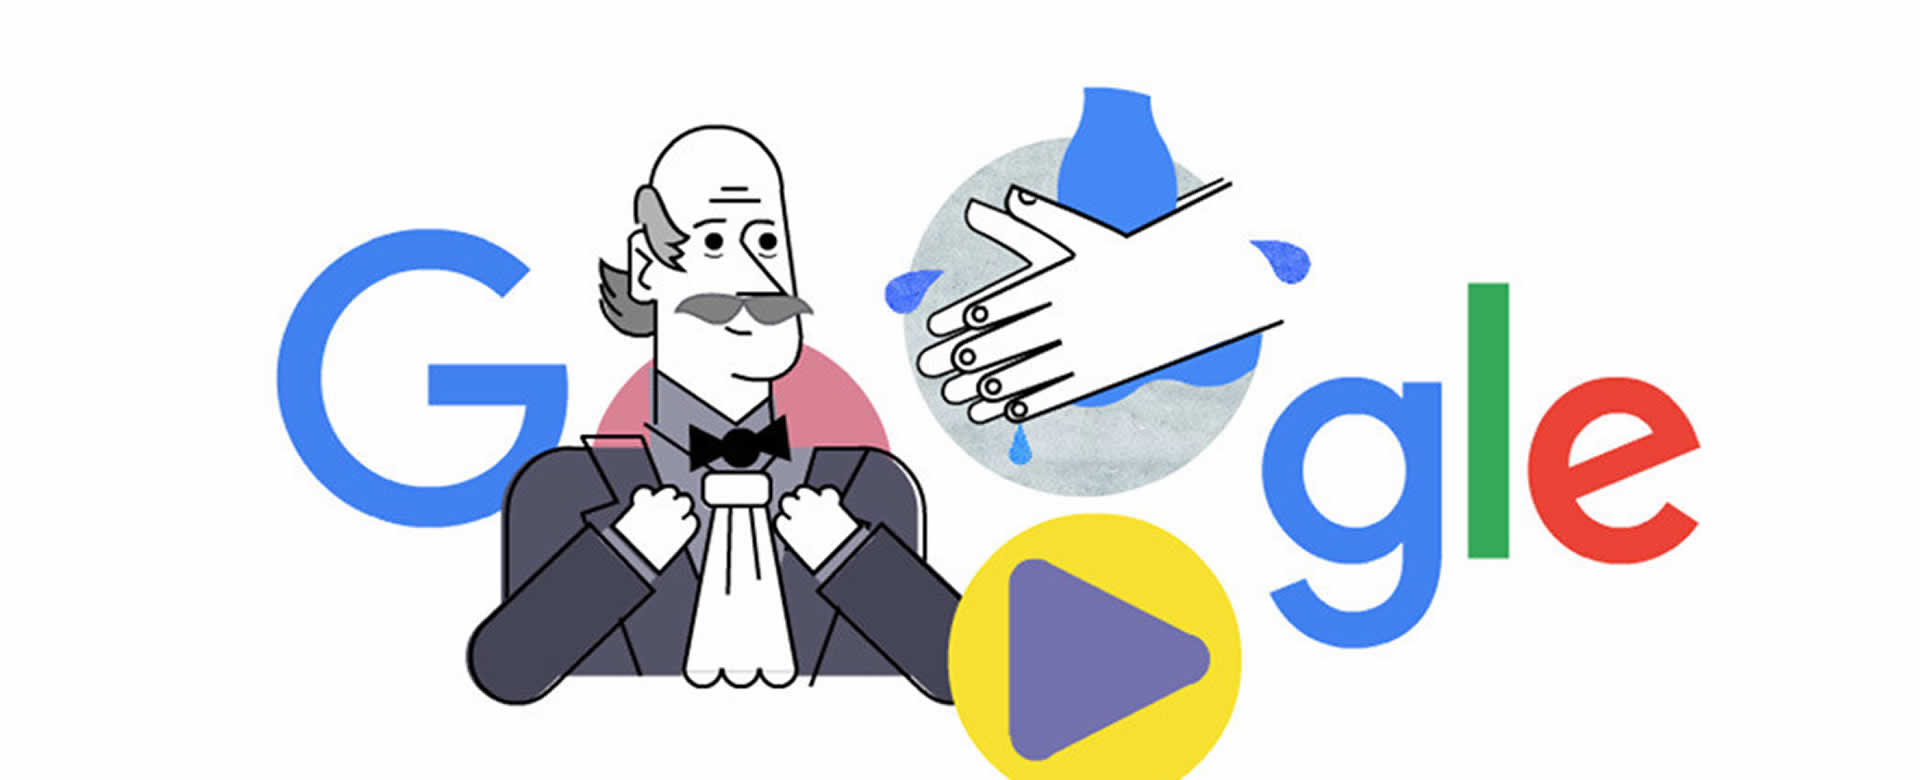 Doodle de Google muestra como lavarse las manos correctamente